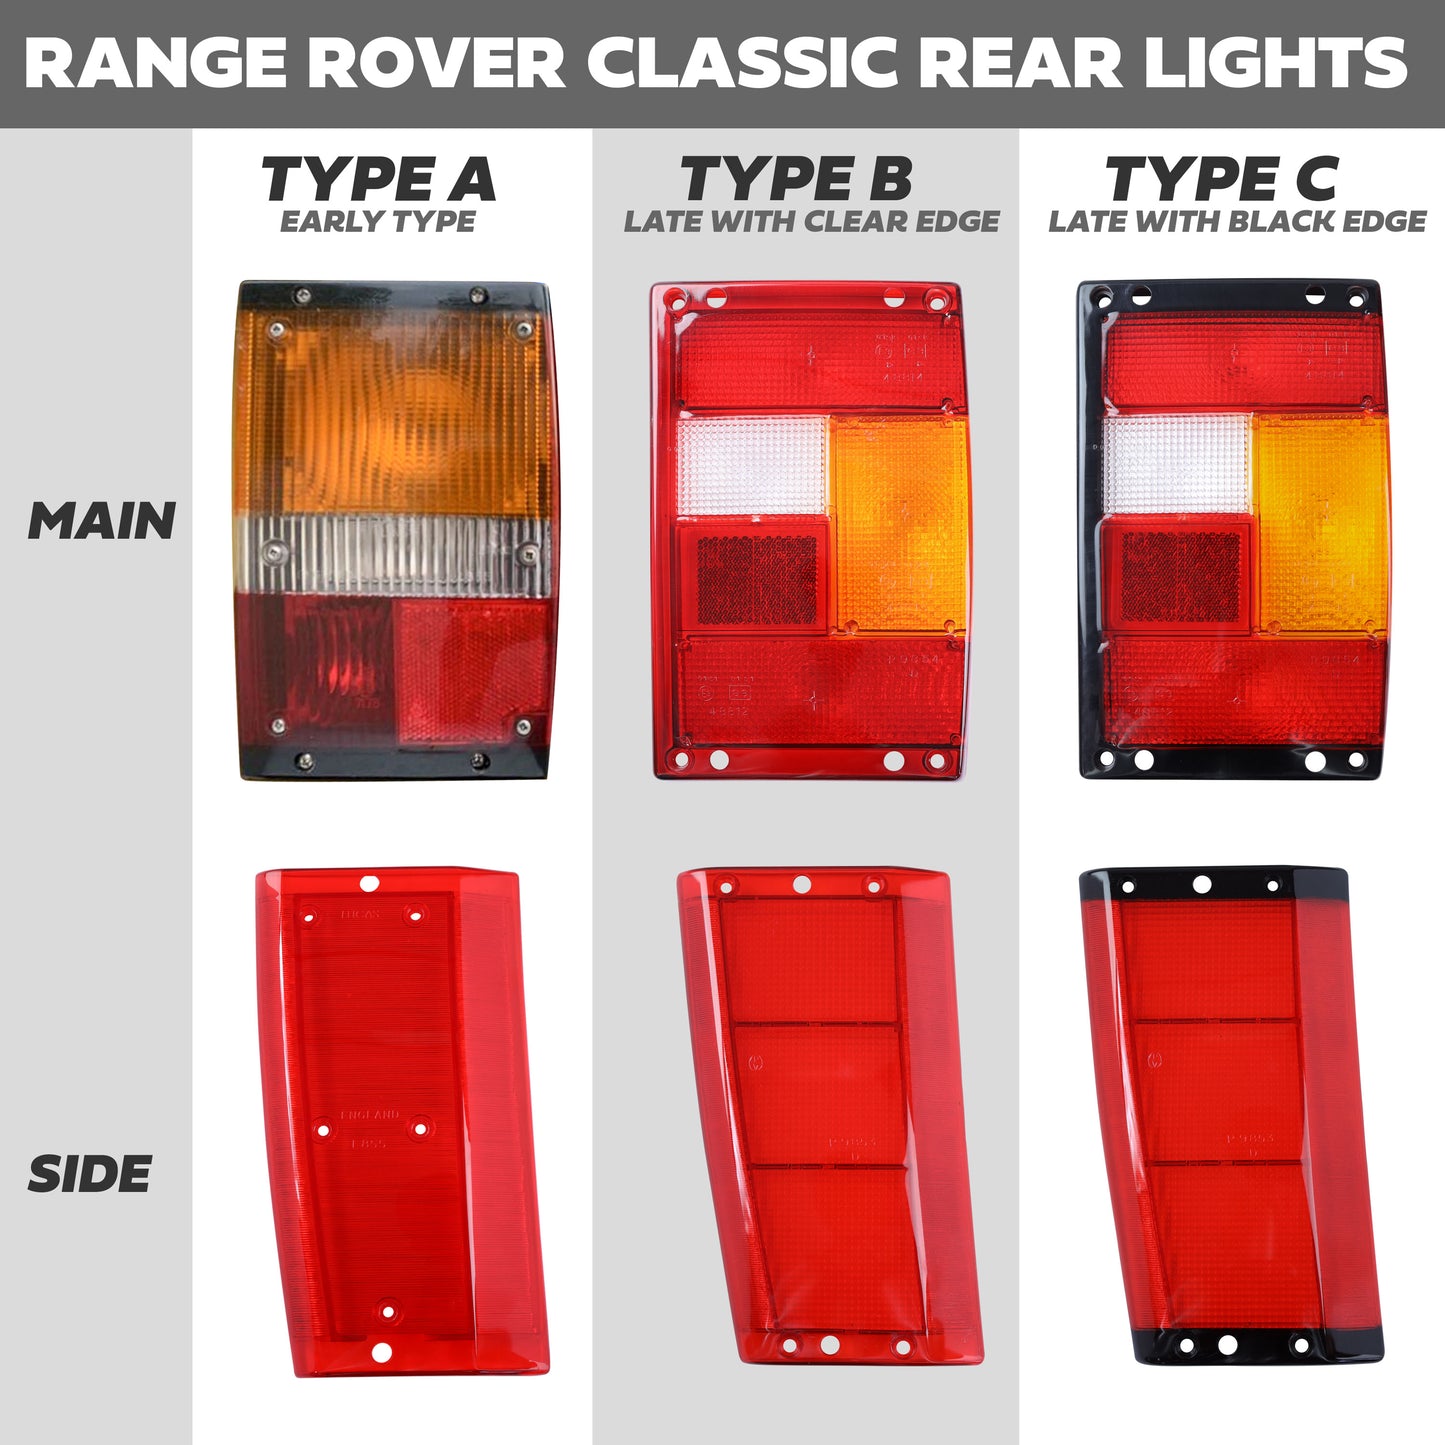 Rear Light Lens for Range Rover Classic - Side Section - Black Edge - Right Side